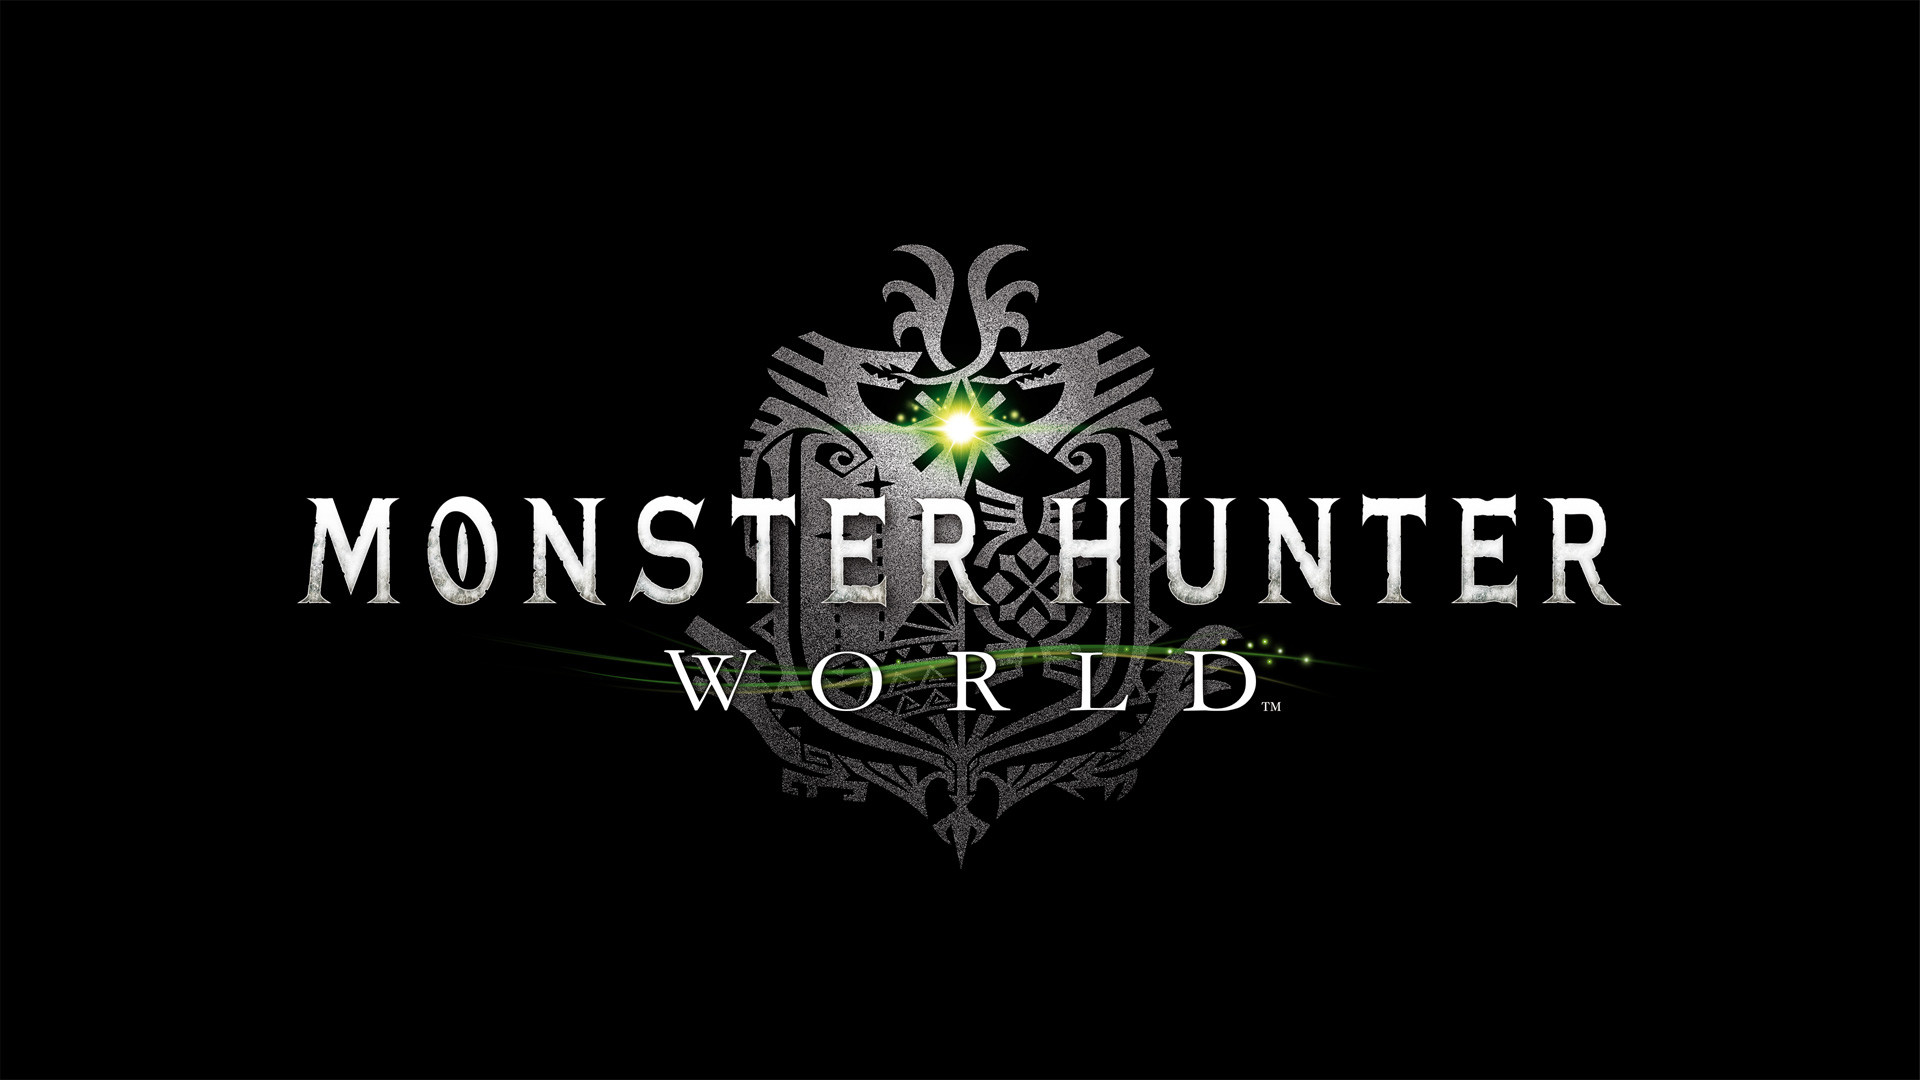 1920x1080 Wallpaper from Monster Hunter World